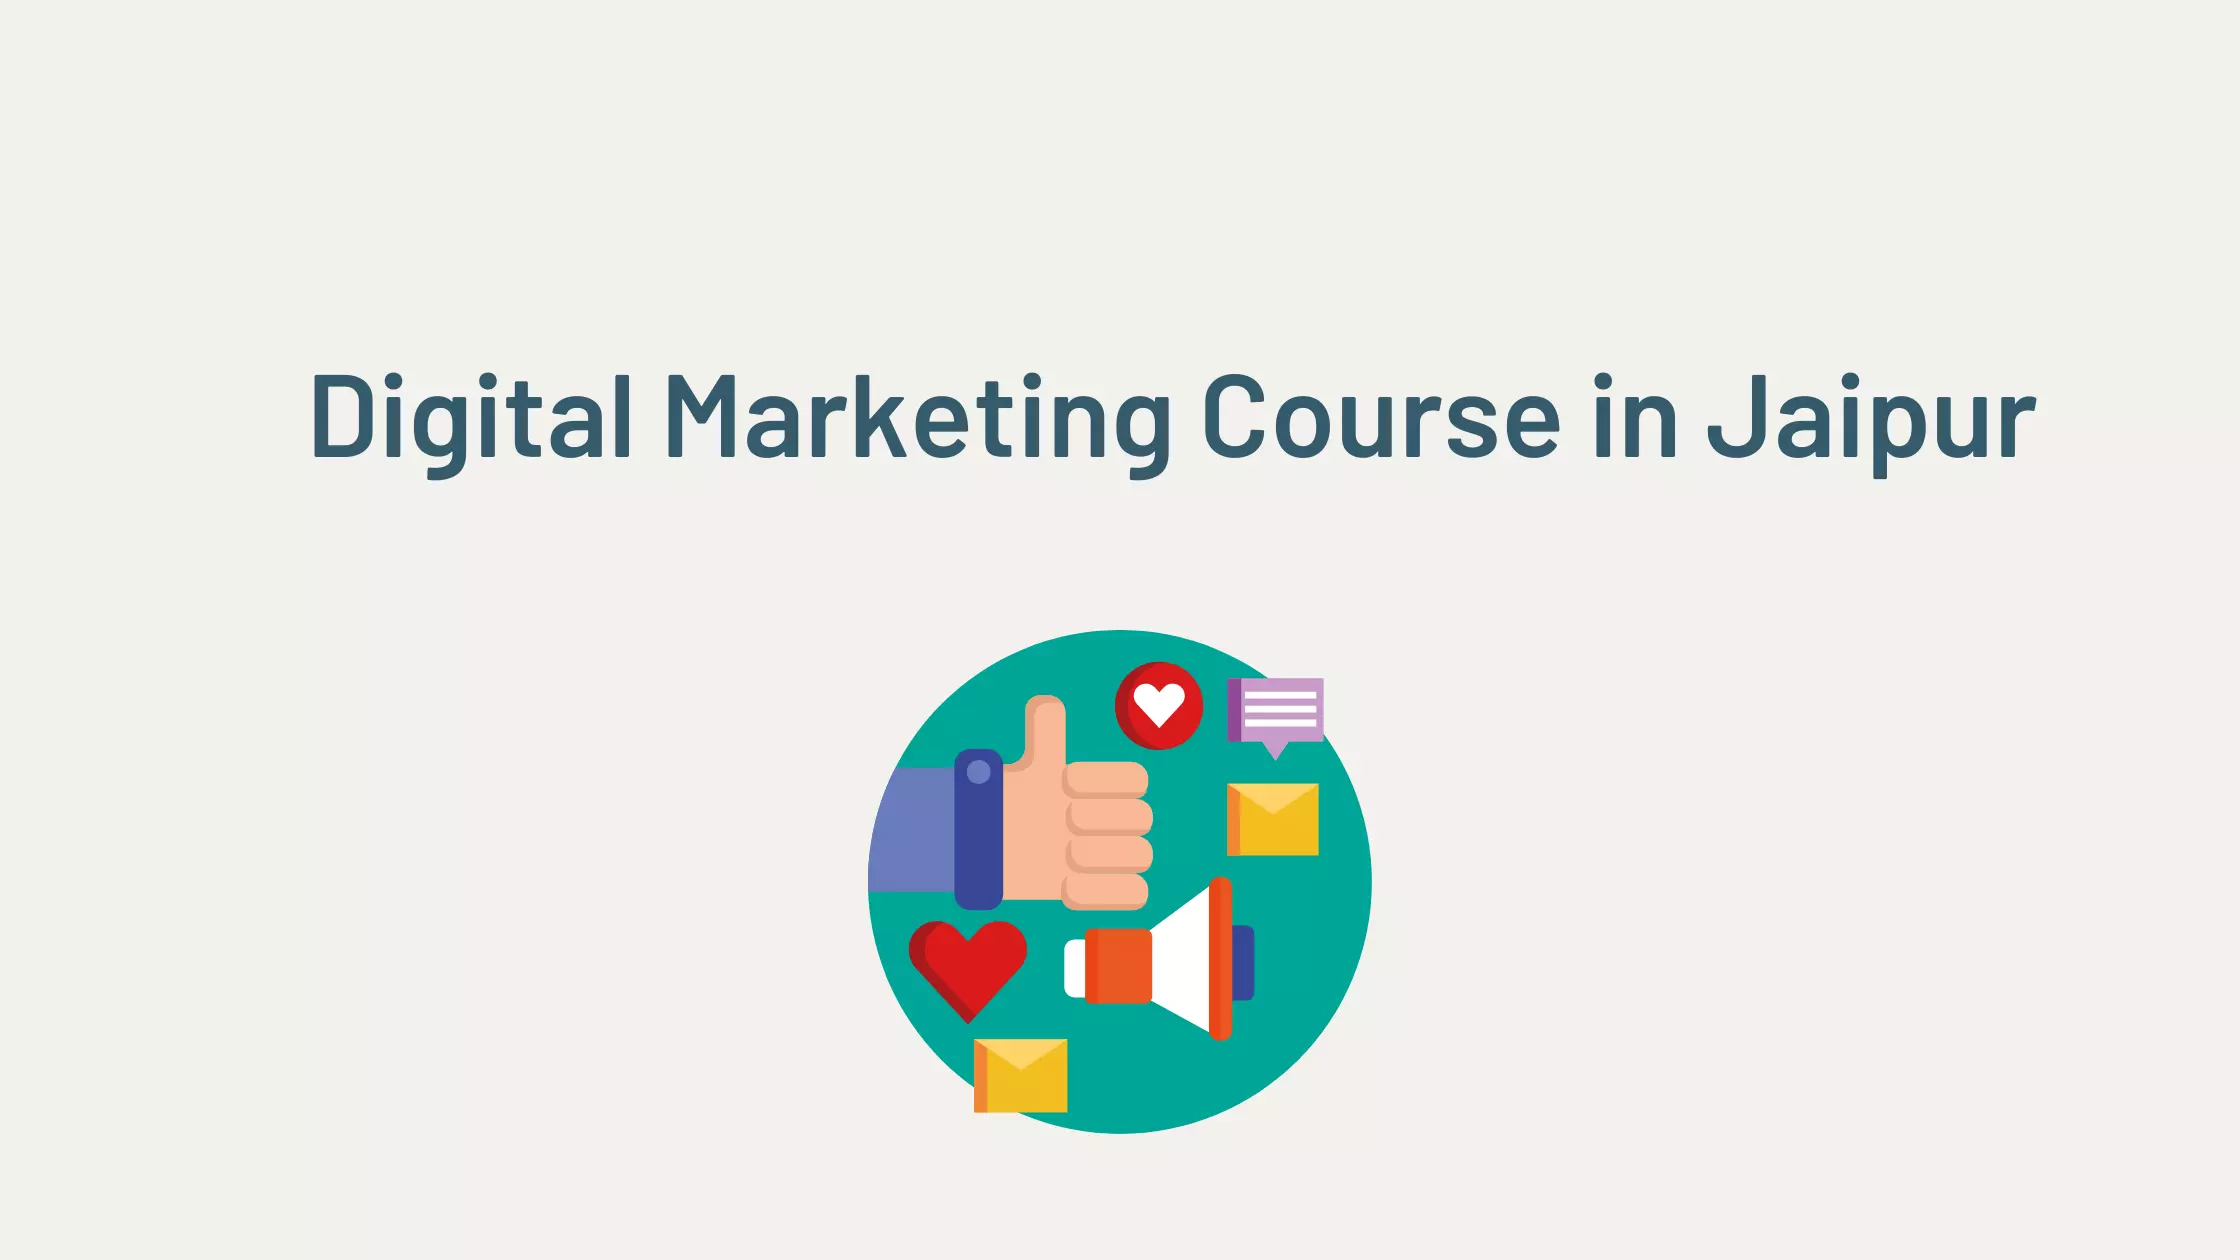 Digital Marketing Course Institute in Jaipur